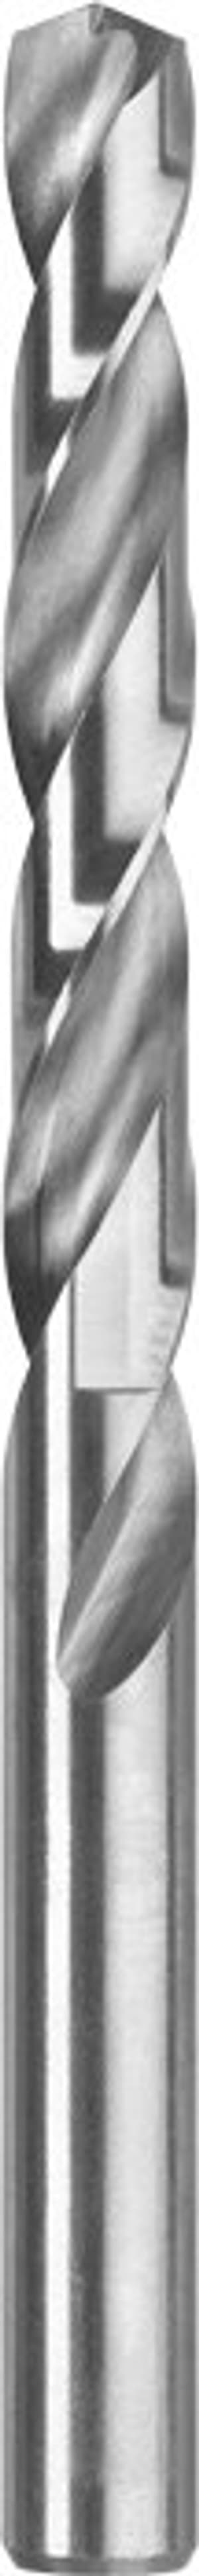 Silver Punta elicoidale HSS, ø 3.2 mm